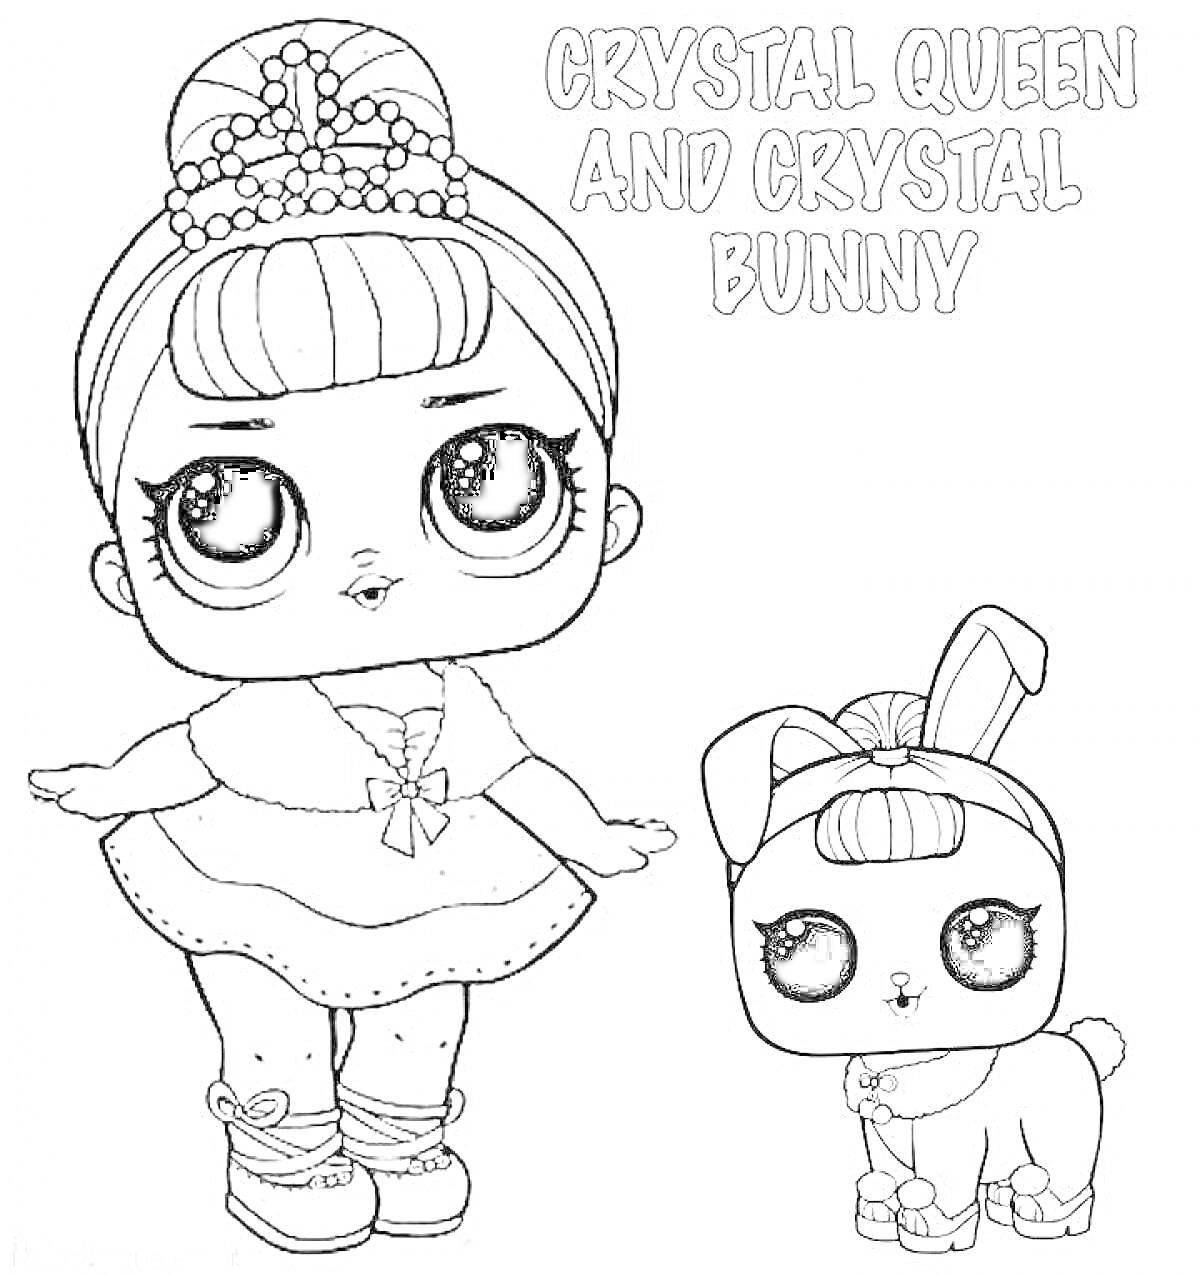 РаскраскаCrystal Queen and Crystal Bunny, девочка с бантом и балетной пачкой, кролик с бантом и браслетом